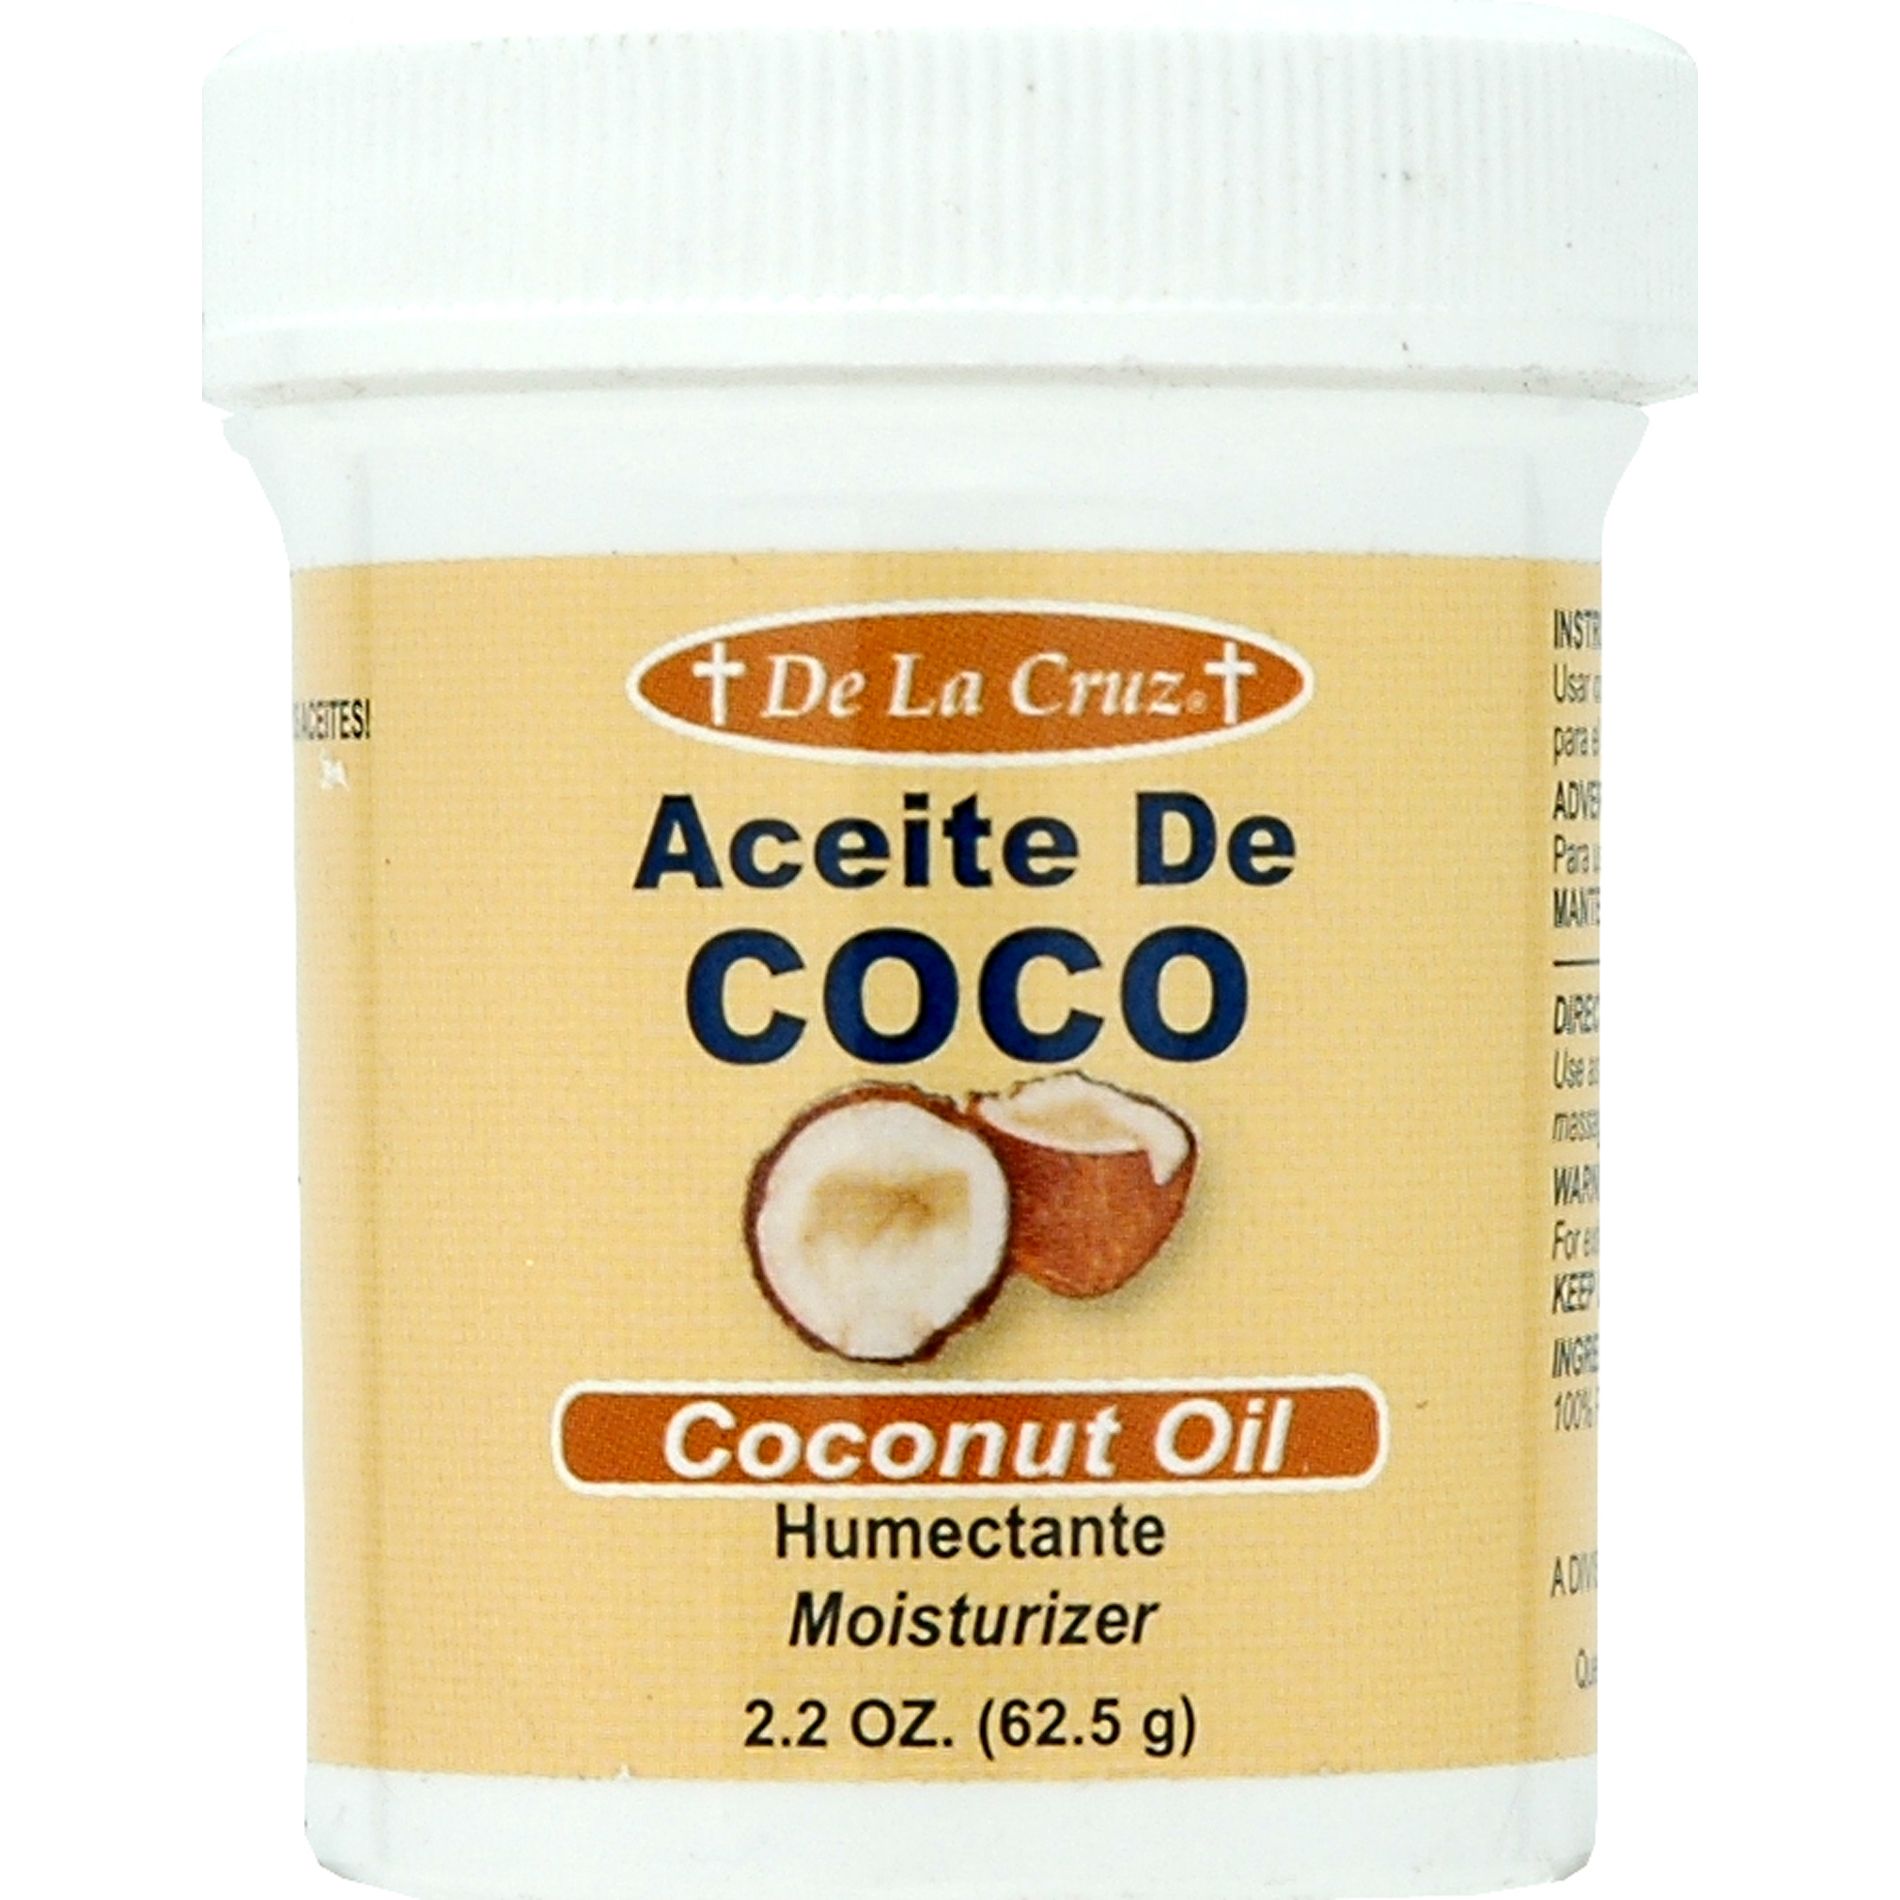 De La Cruz Aceite De Coco Humectante Coconut 2.2 Ounce Jar